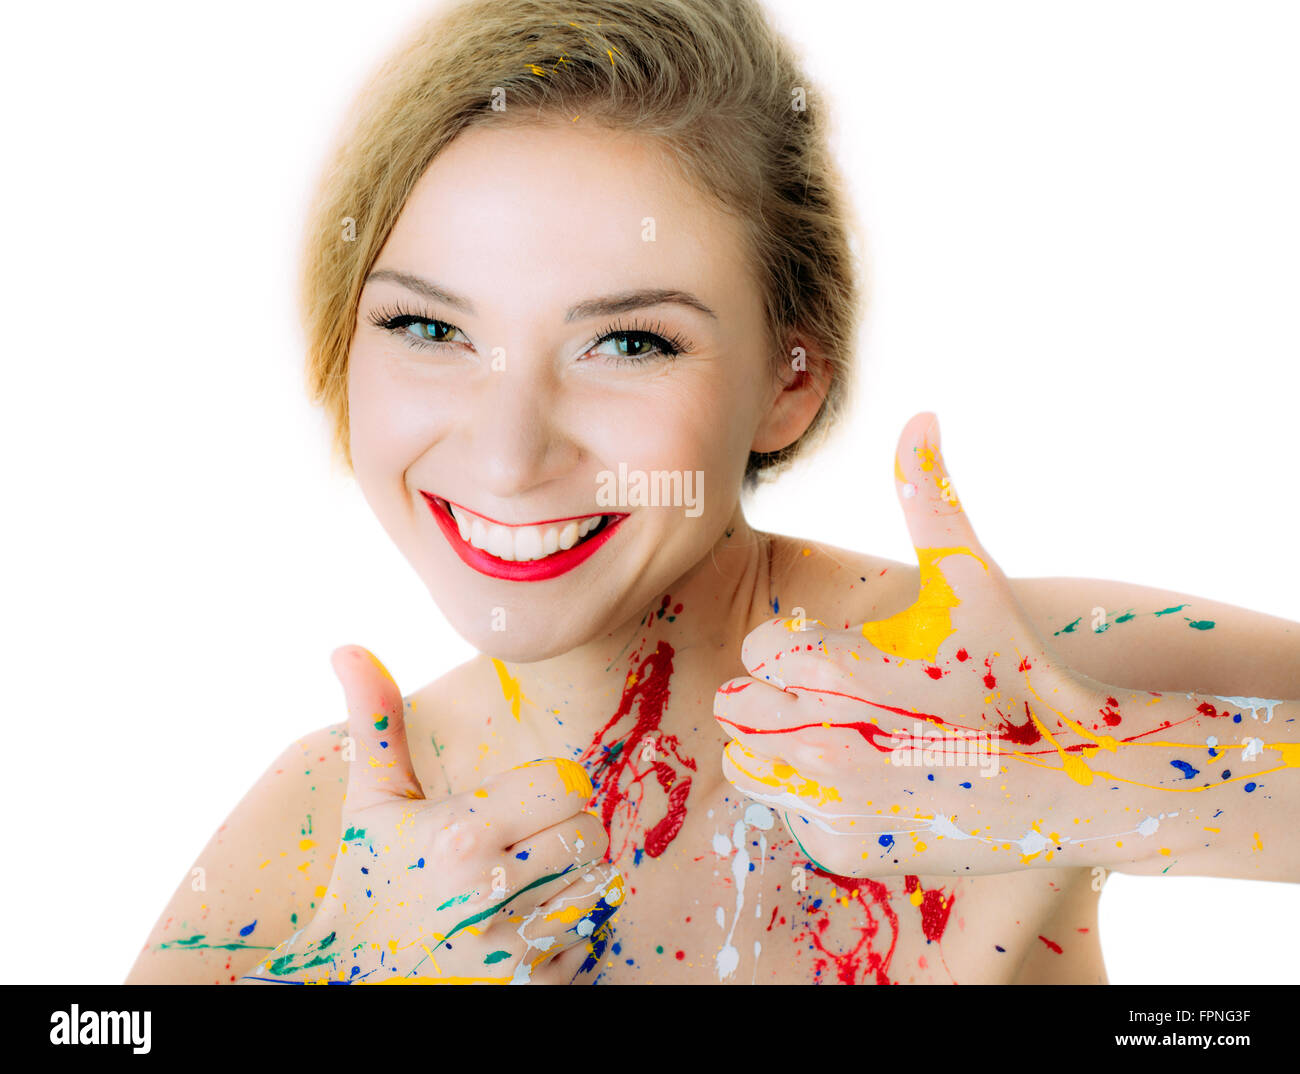 Portrait de femme peinture colorée en rouge avec des lèvres Thumbs up isolé sur fond blanc Banque D'Images